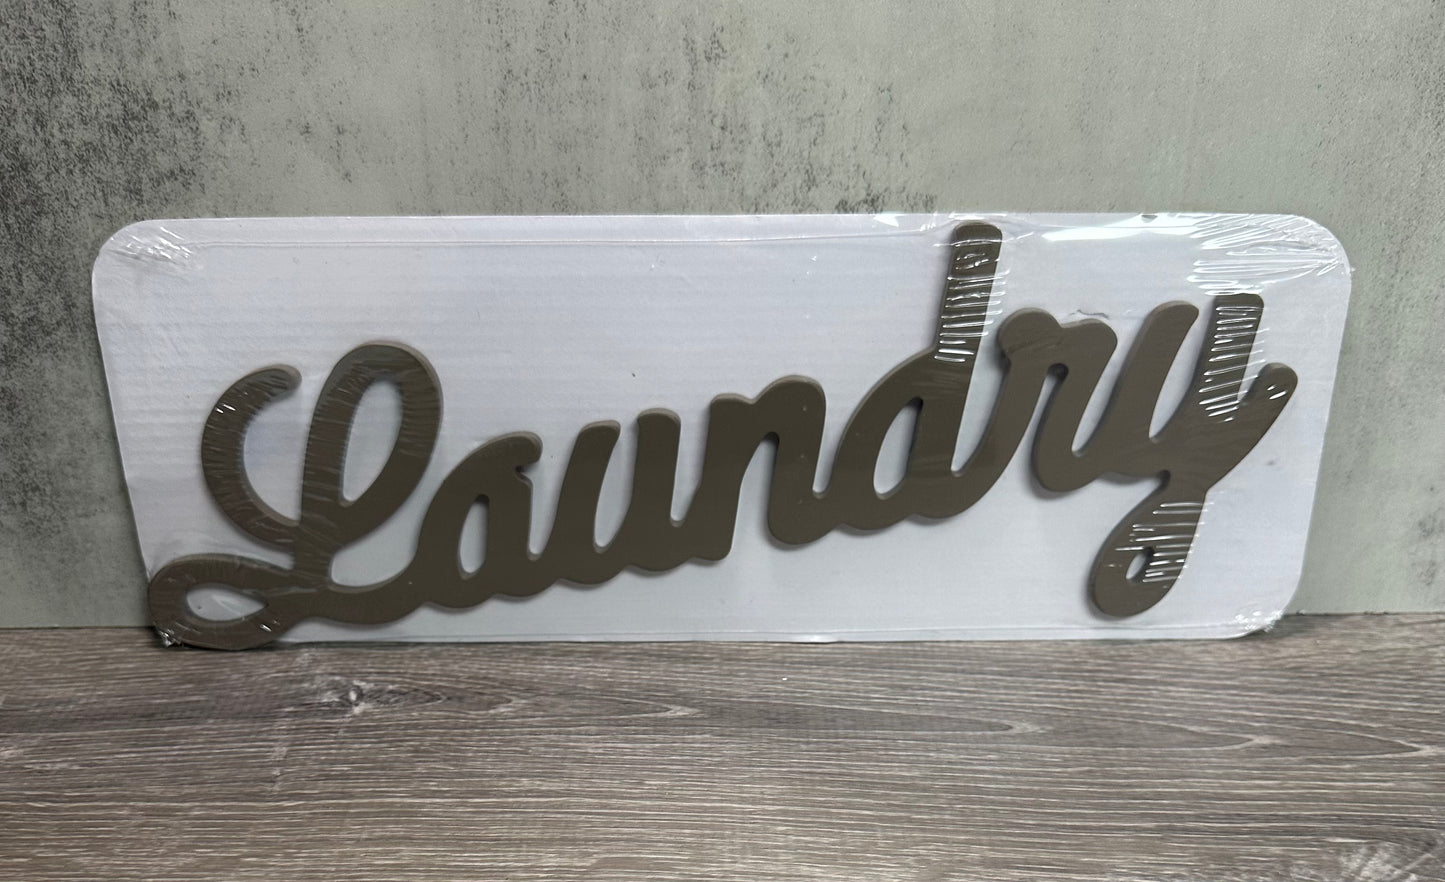 Bullseye Playground “Laundry” Wood Sign